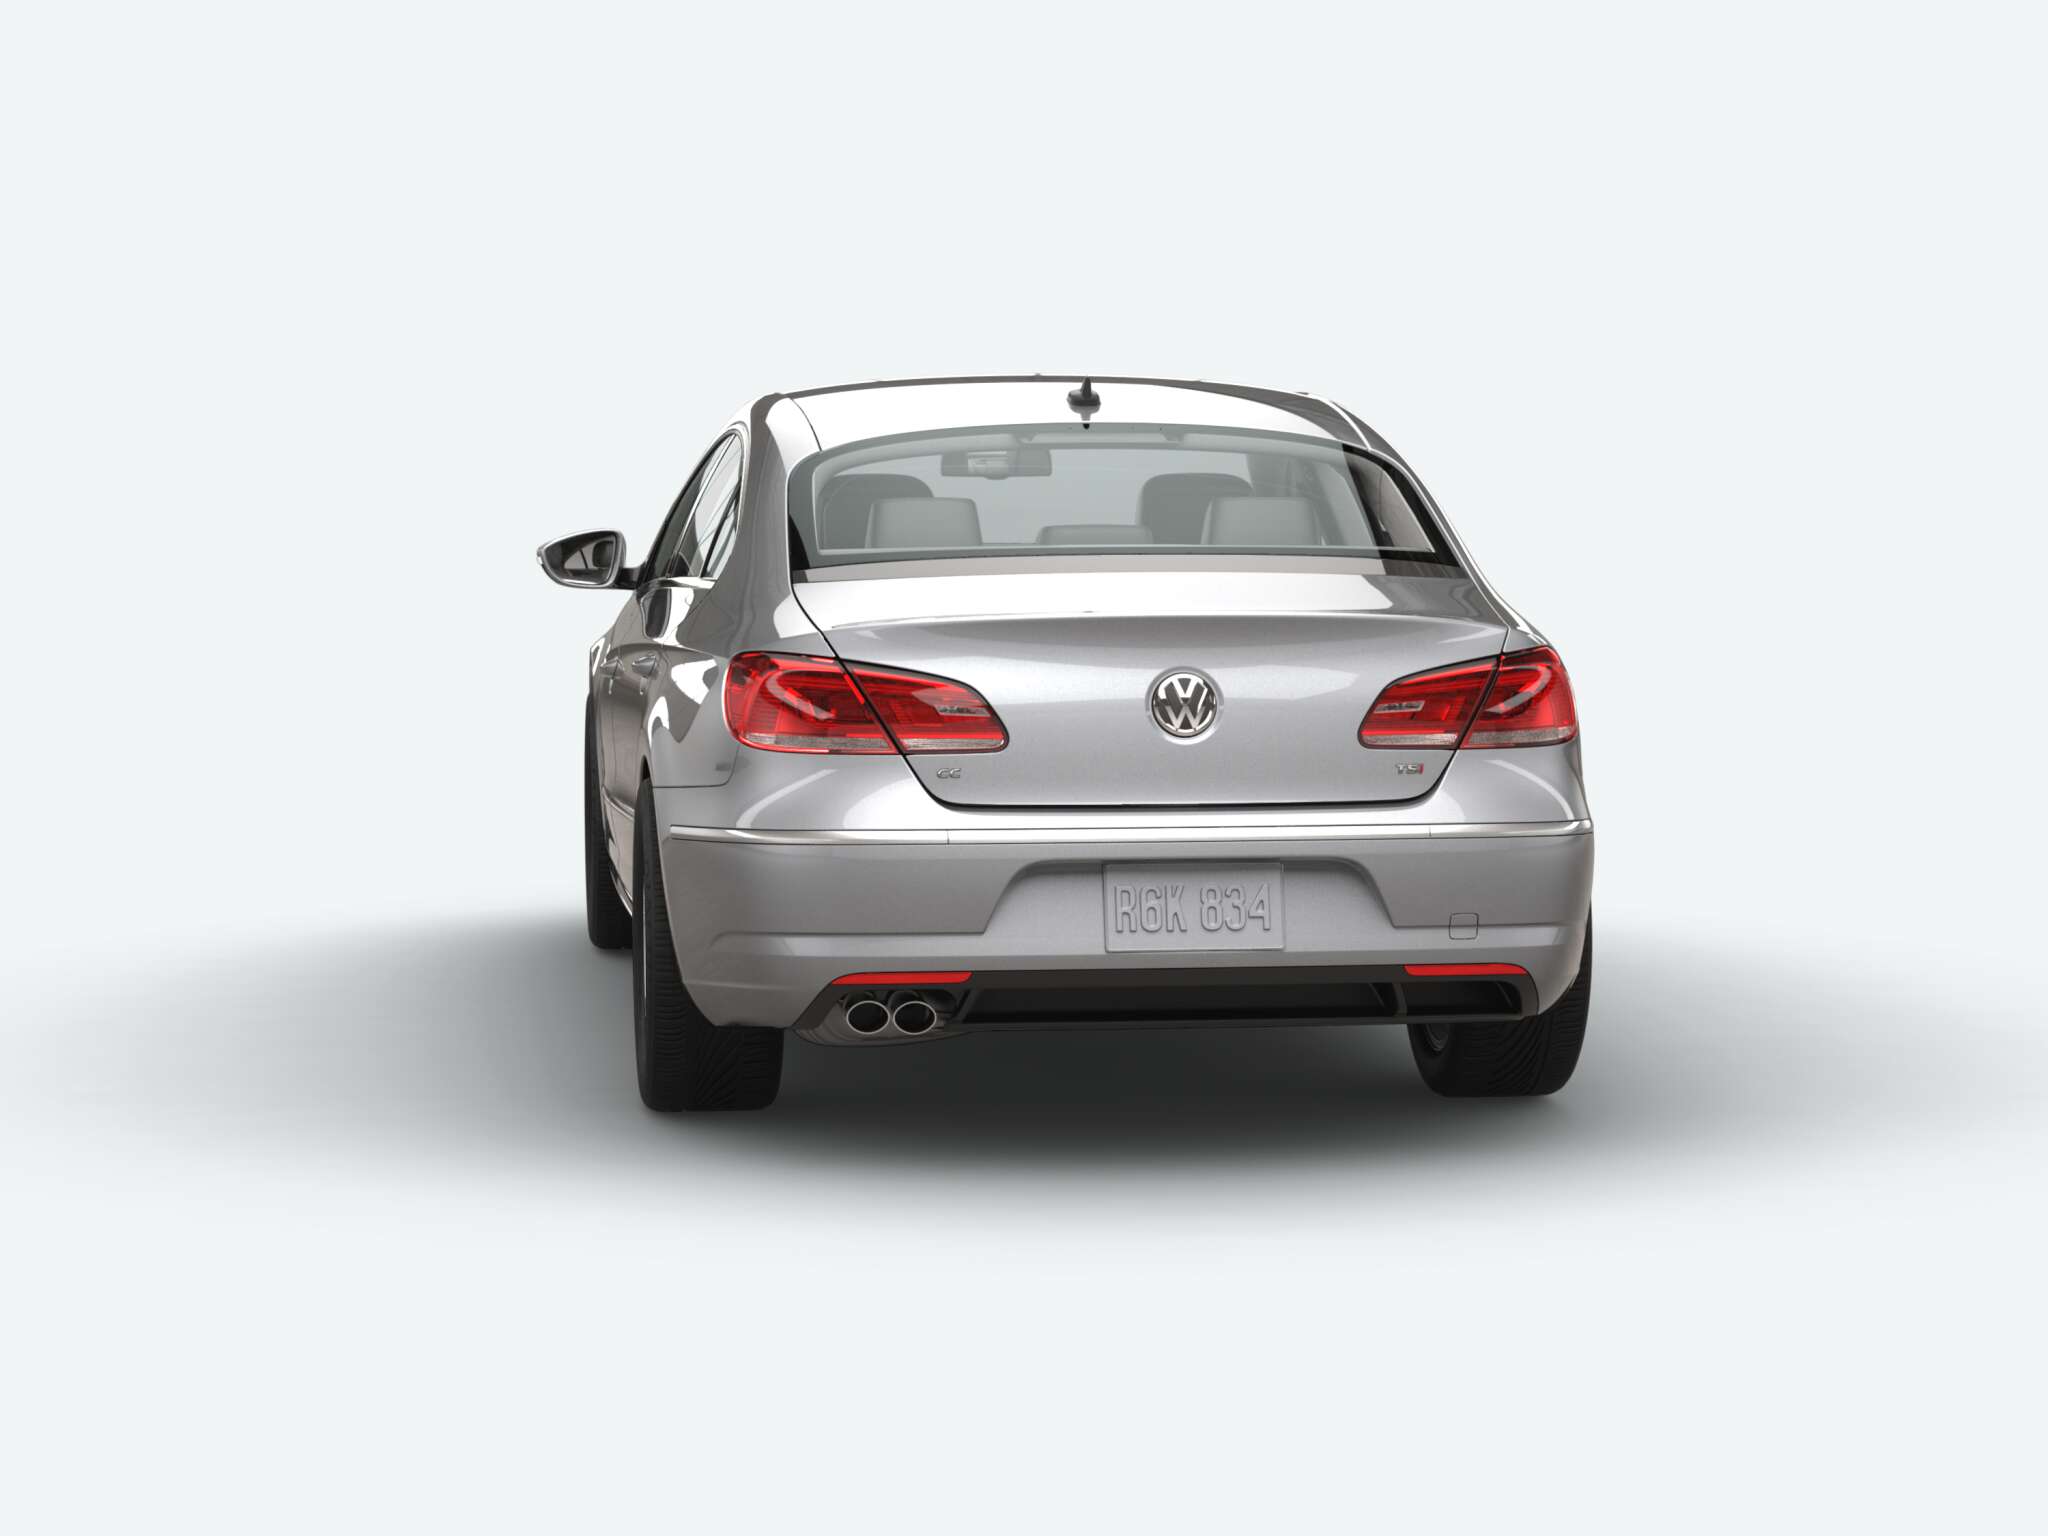 Volkswagen CC 2.0T Trend rear view